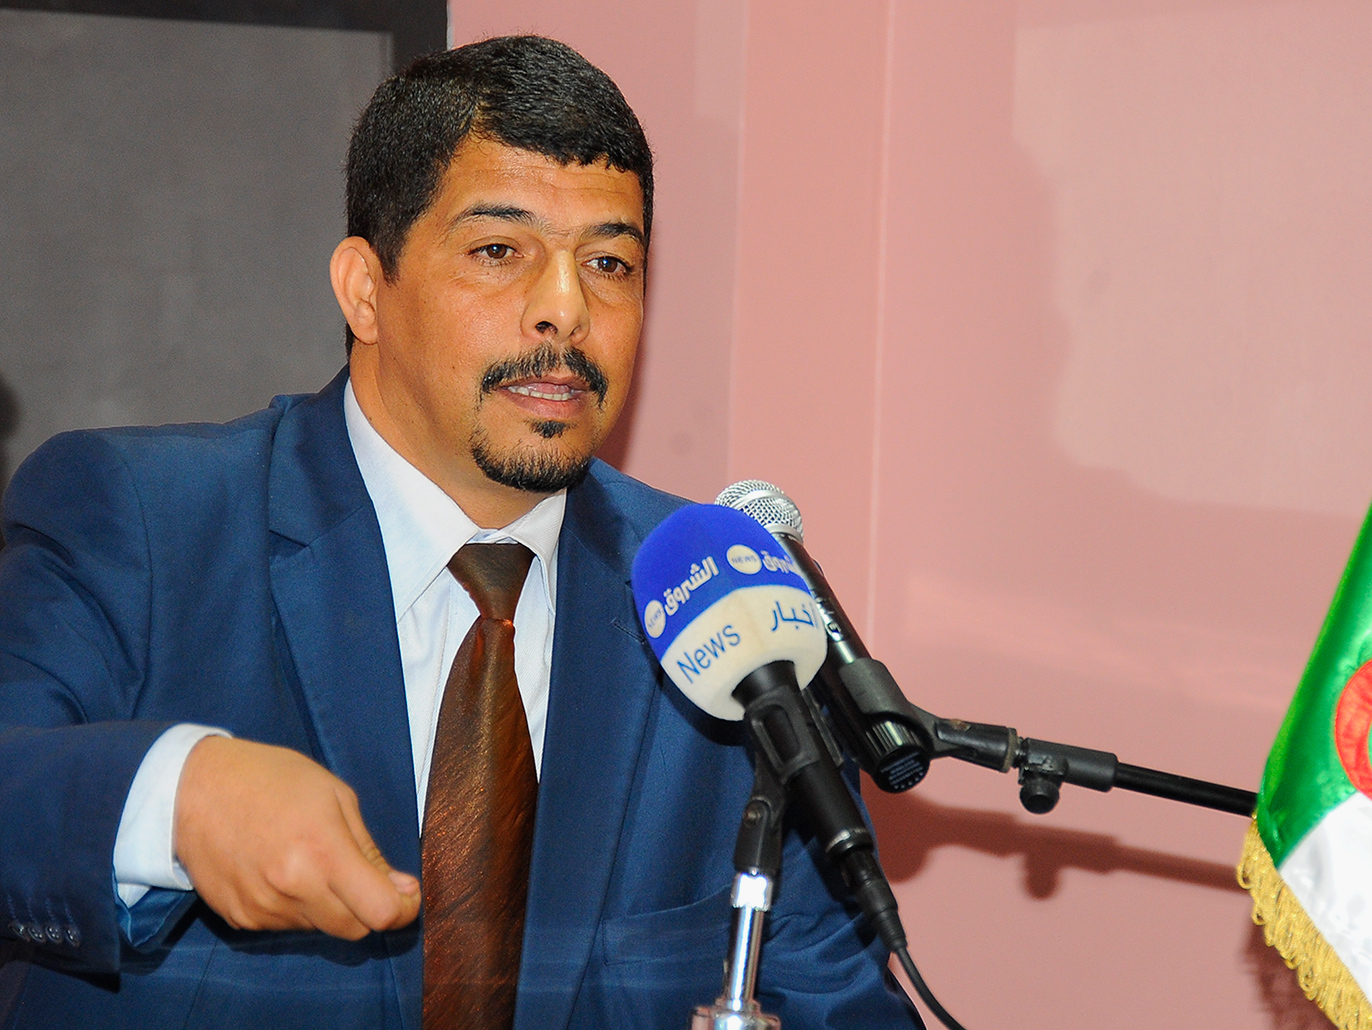 ‪‬ طيفور: الجزائر تحتاج لبناء مصداقية جديدة تعطي الفرصة لحياة برلمانية حقيقية(الجزيرة)